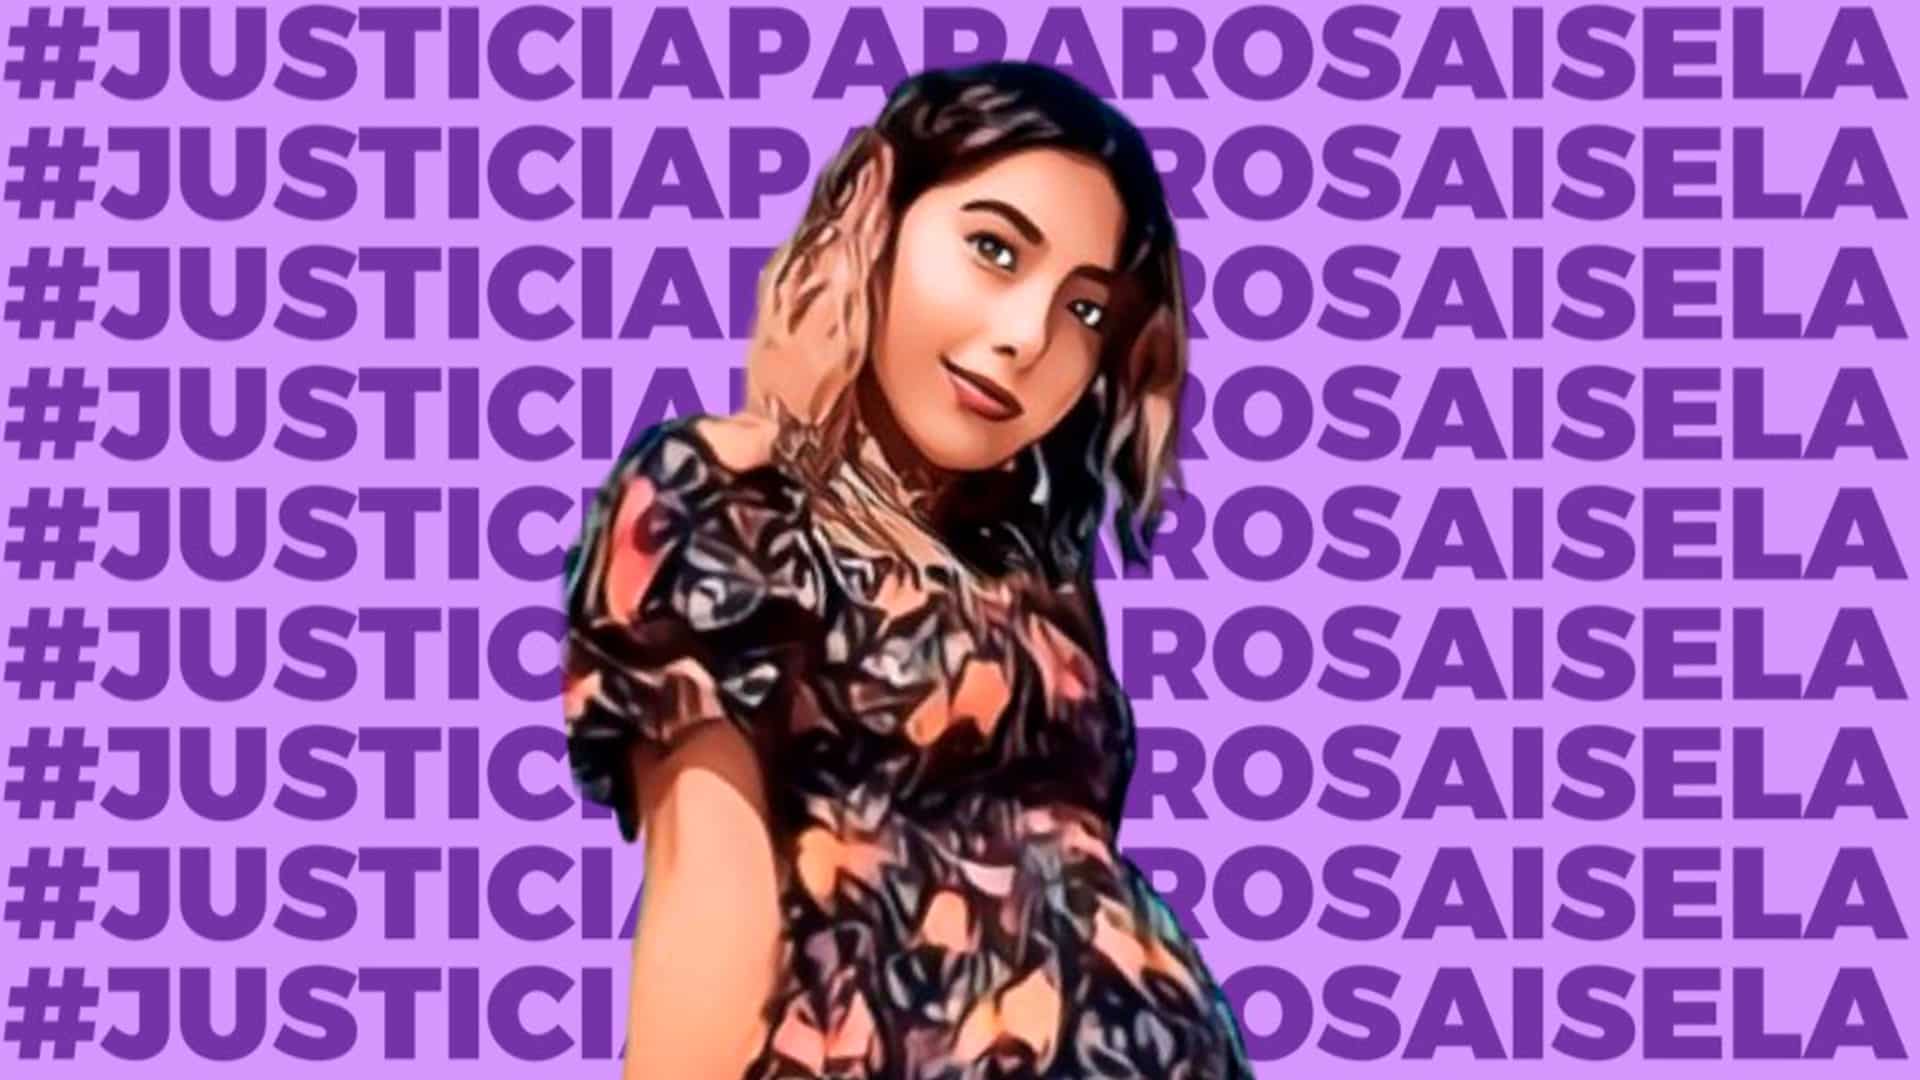 Hallaron sin vida a Rosa Isela Castro en Veracruz